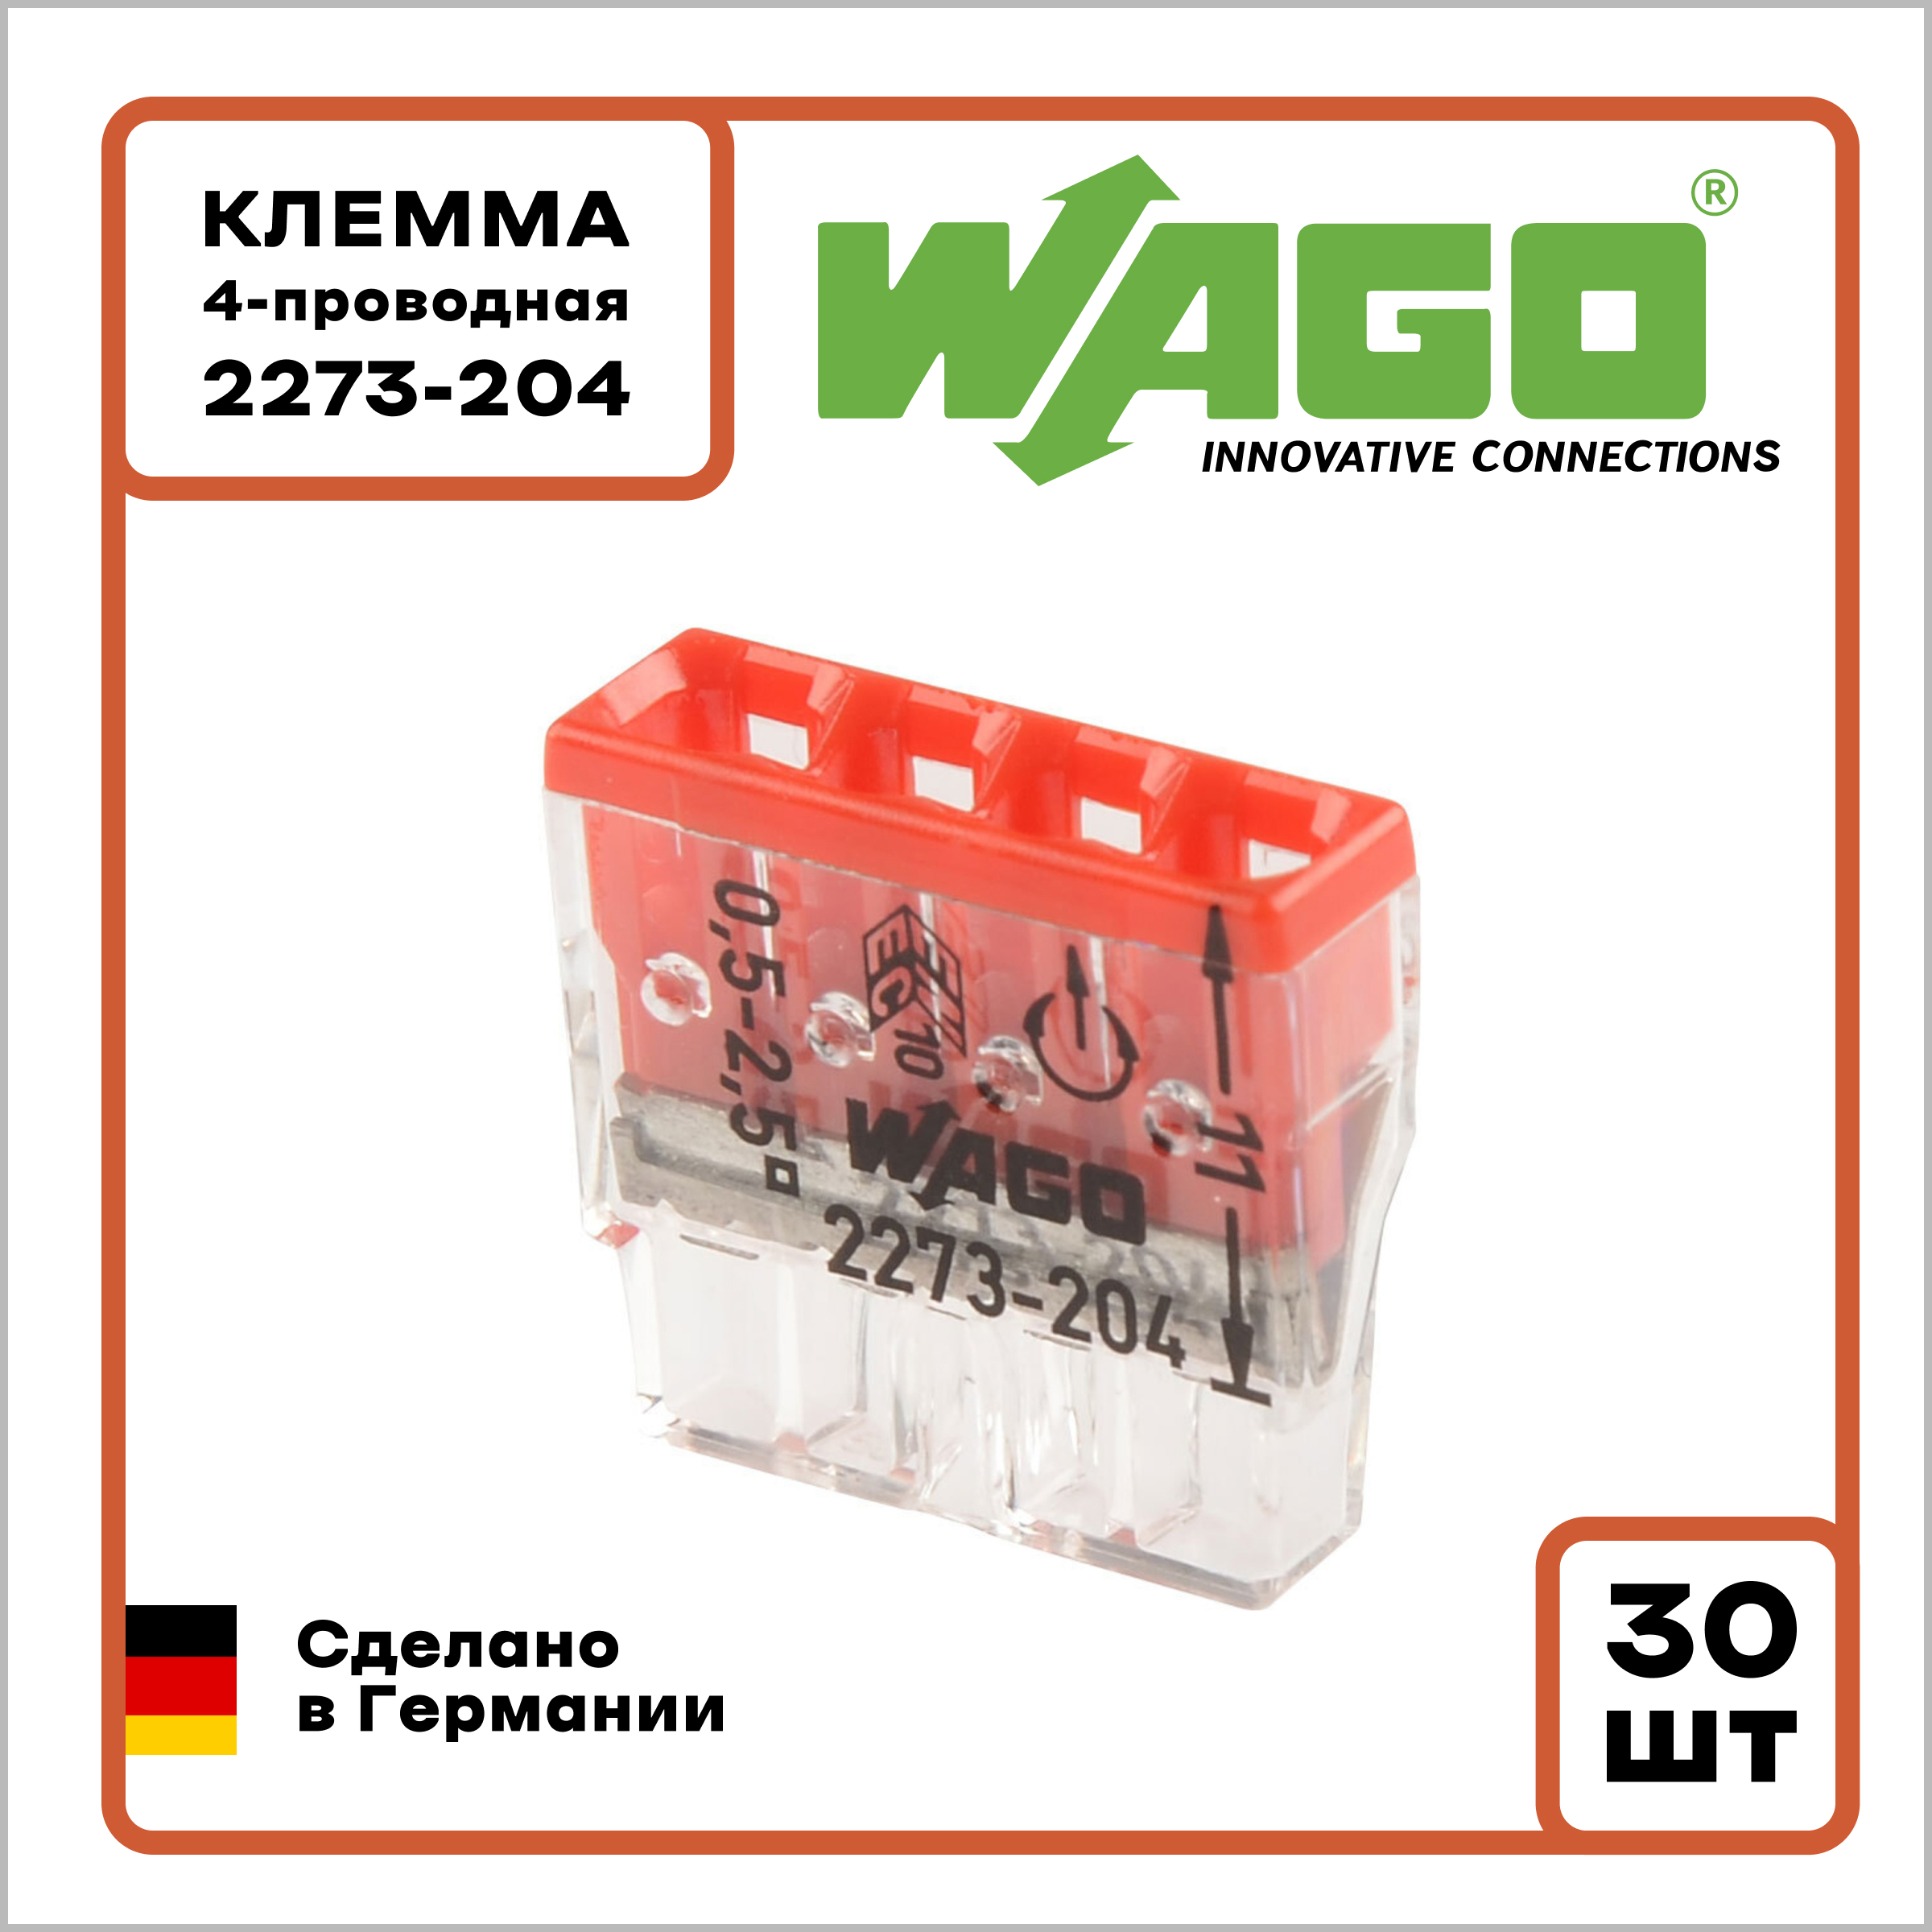  Wago Оригинал 4-проводная 2273-204 0.5-2.5 мм² без пасты 30 шт .